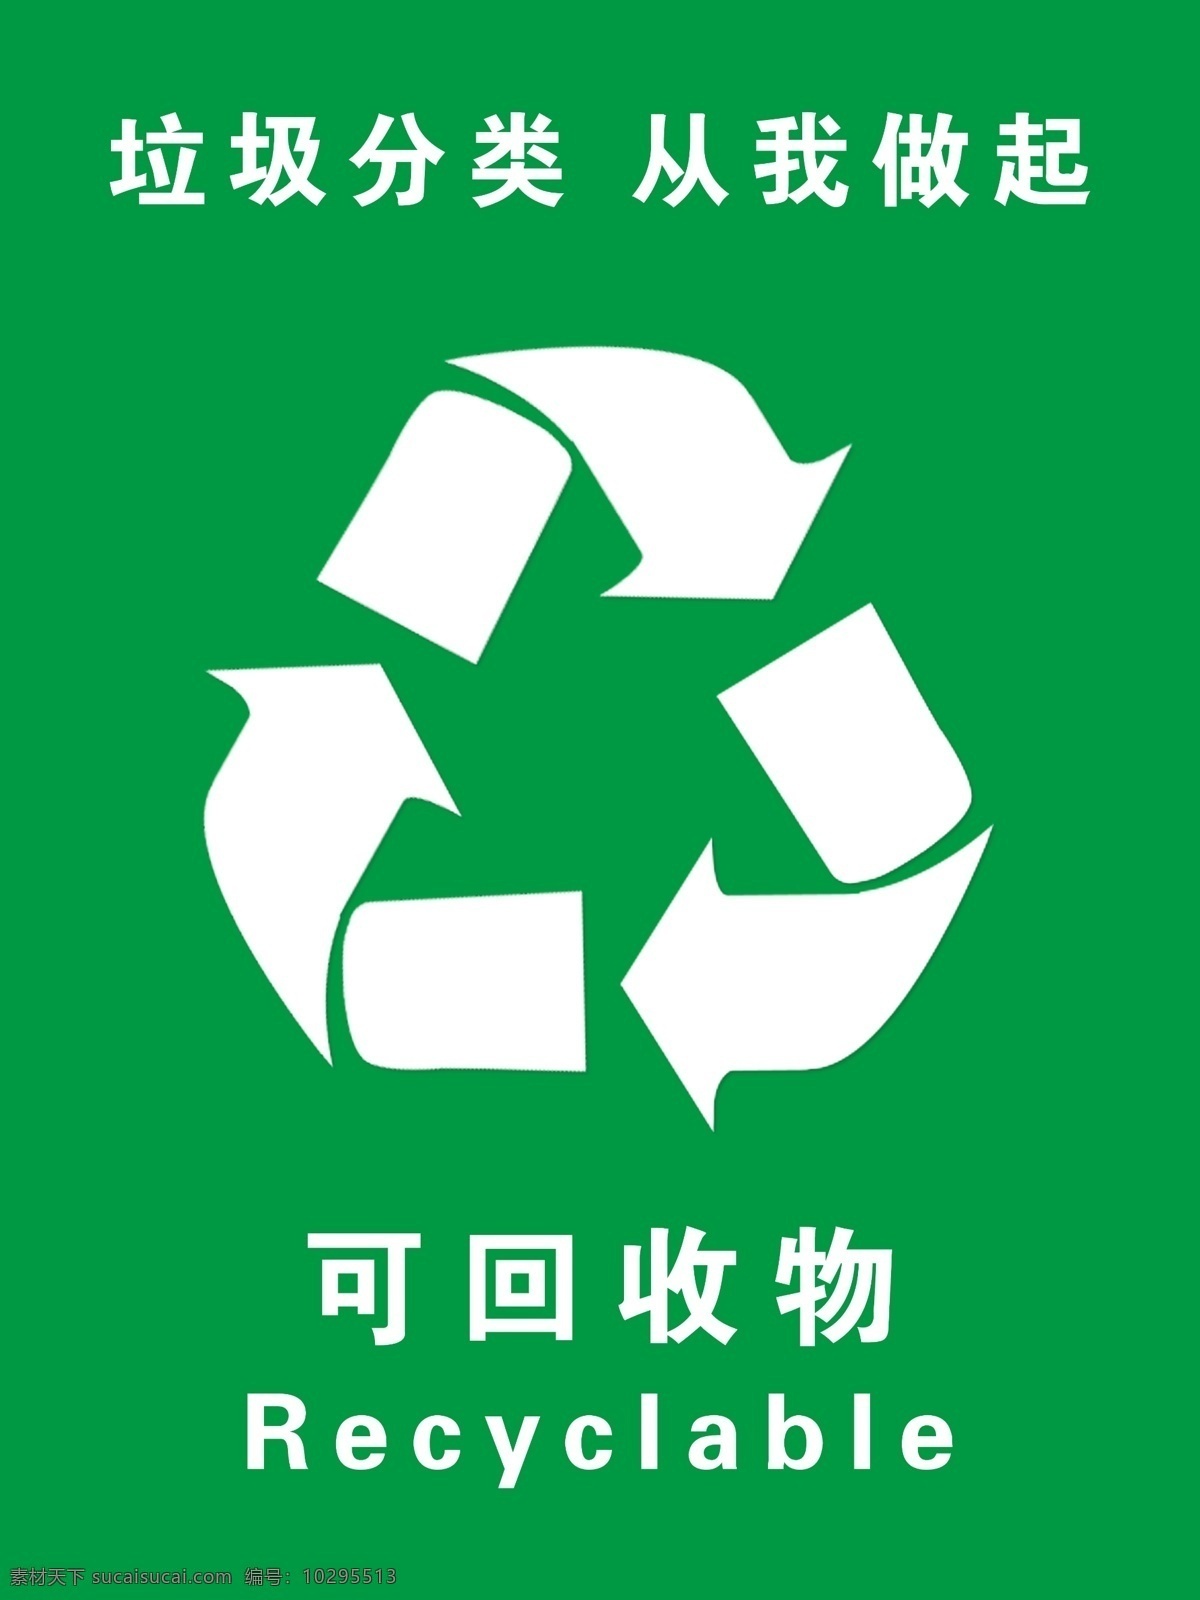 可回收物 垃圾桶标识 可回收 图标 可回收标志 分层